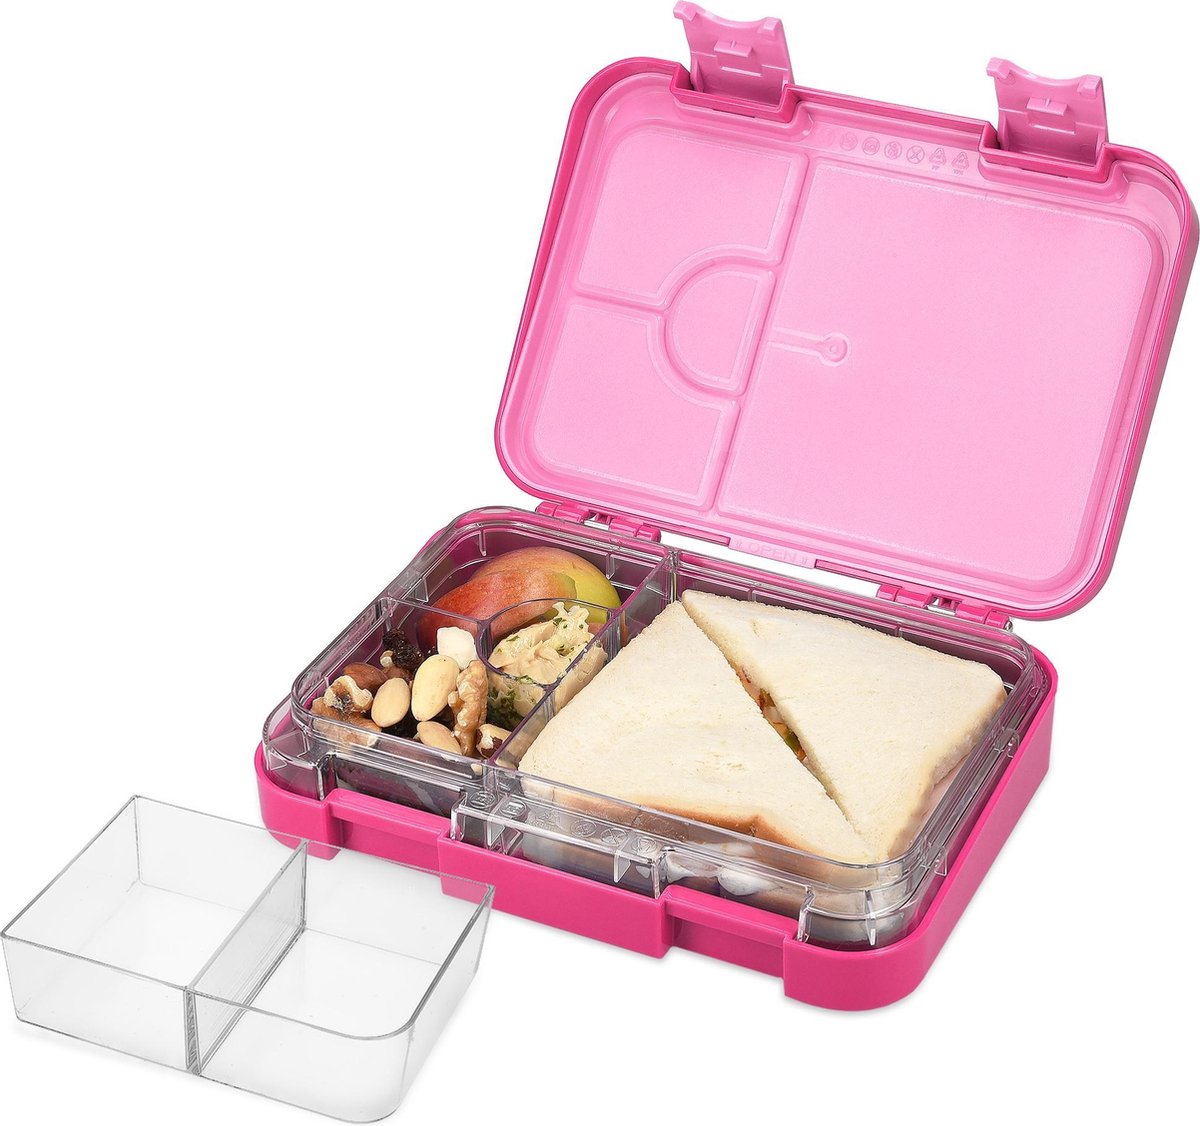 Schmatzfatz Bento Lunch Box Adulte Boite Repas Compartiment